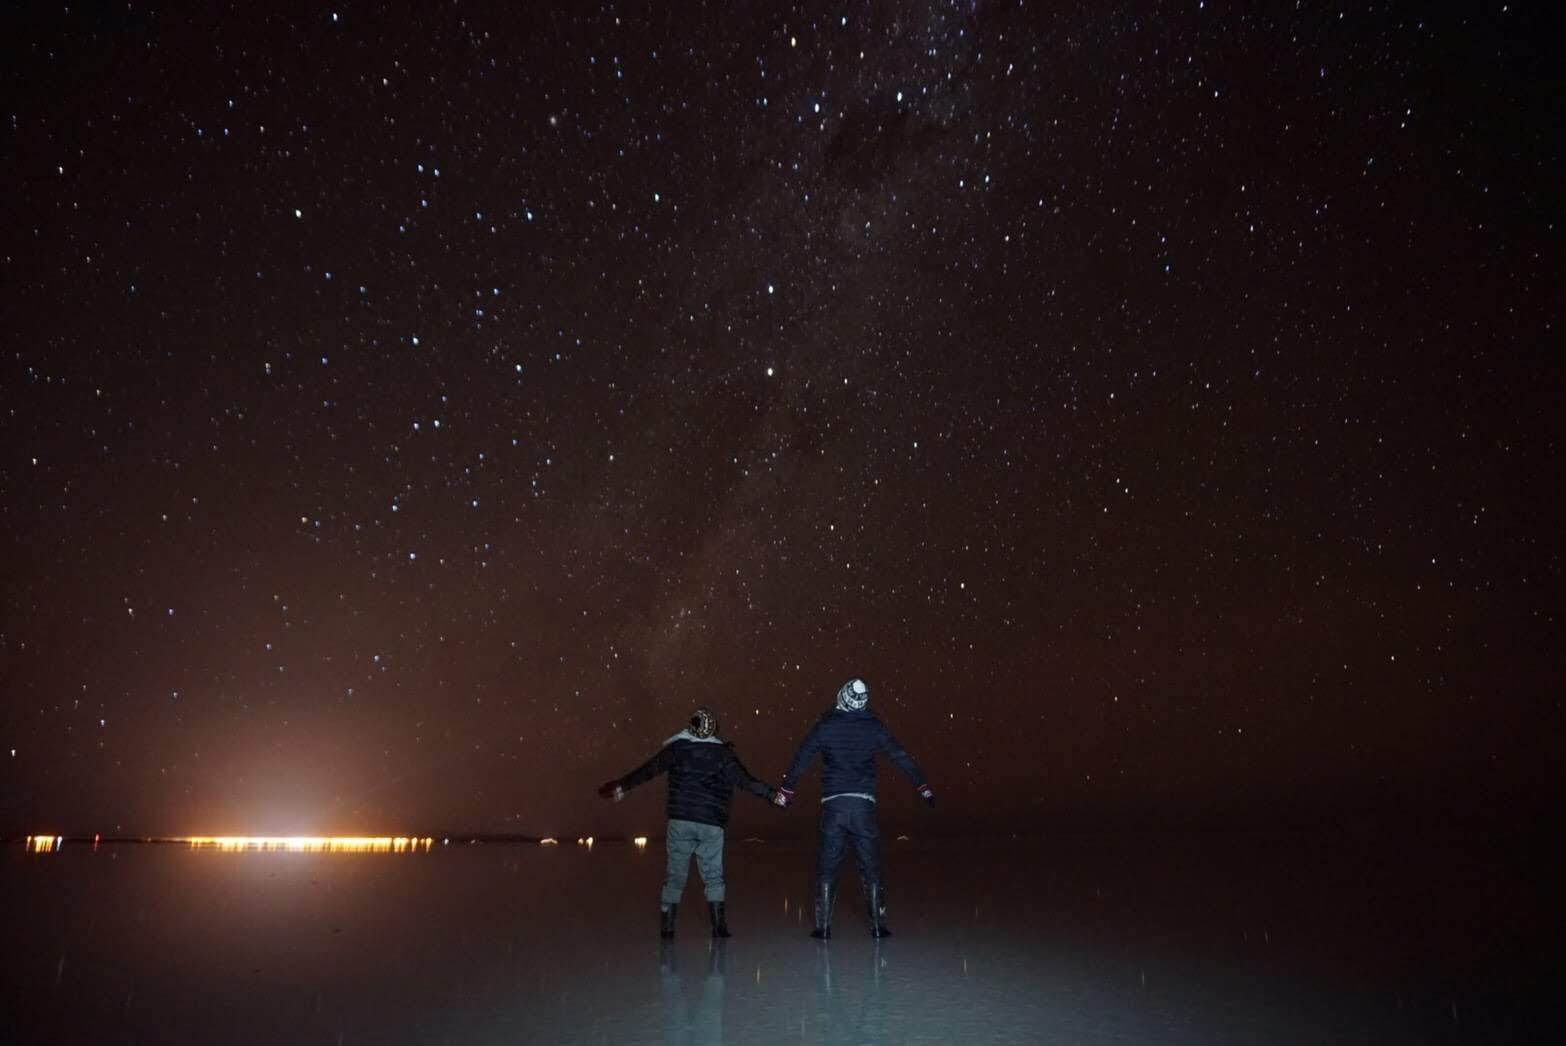 ウユニ塩湖の星空